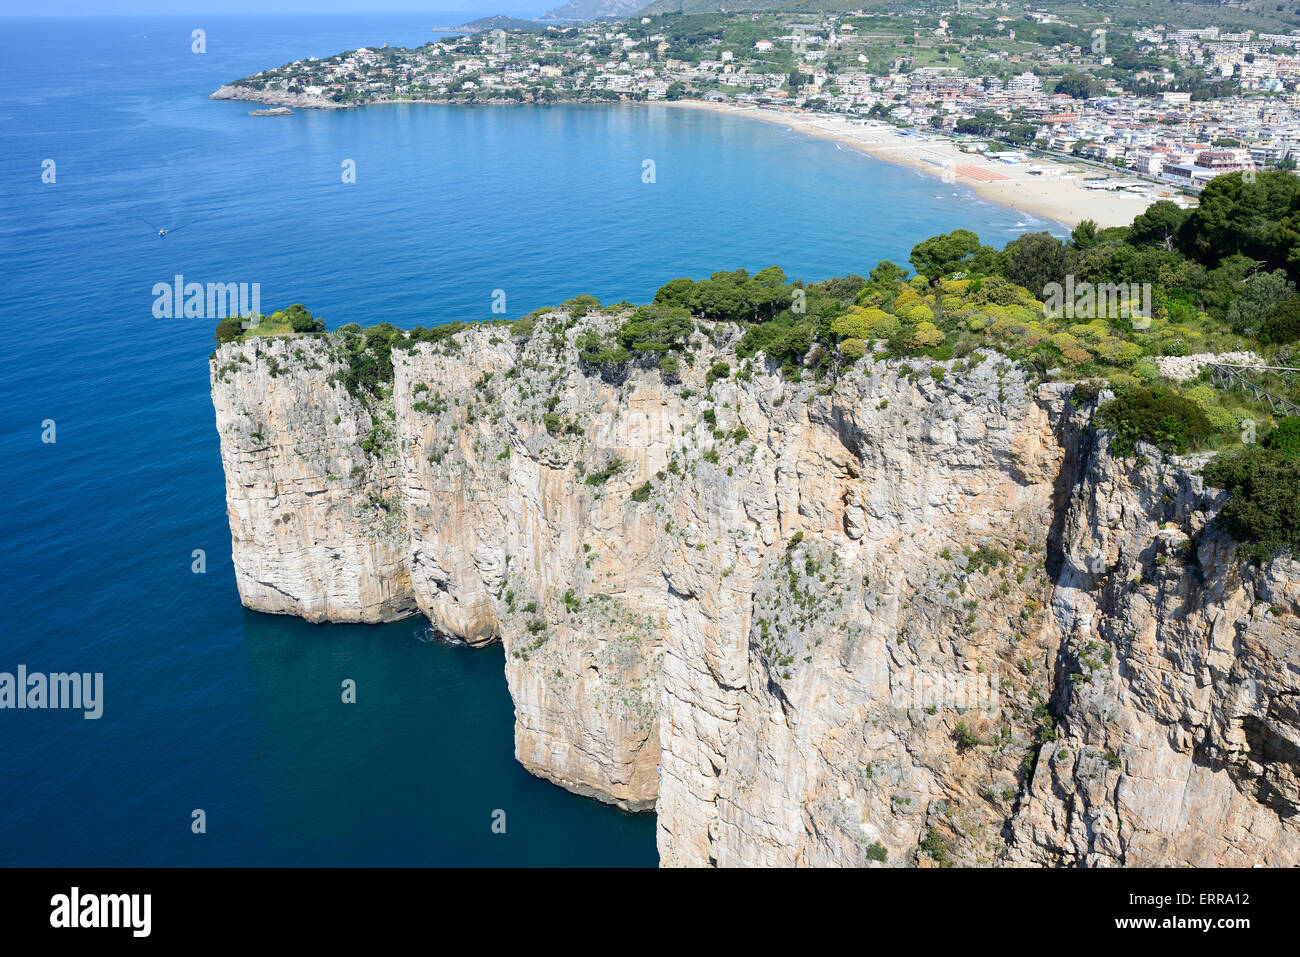 AERIAL VIEW. Precipitous limestone cliff of Montagna Spaccata with the Serapo Beach in the distance. Gaeta, Province of Latina, Lazio, Italy. Stock Photo